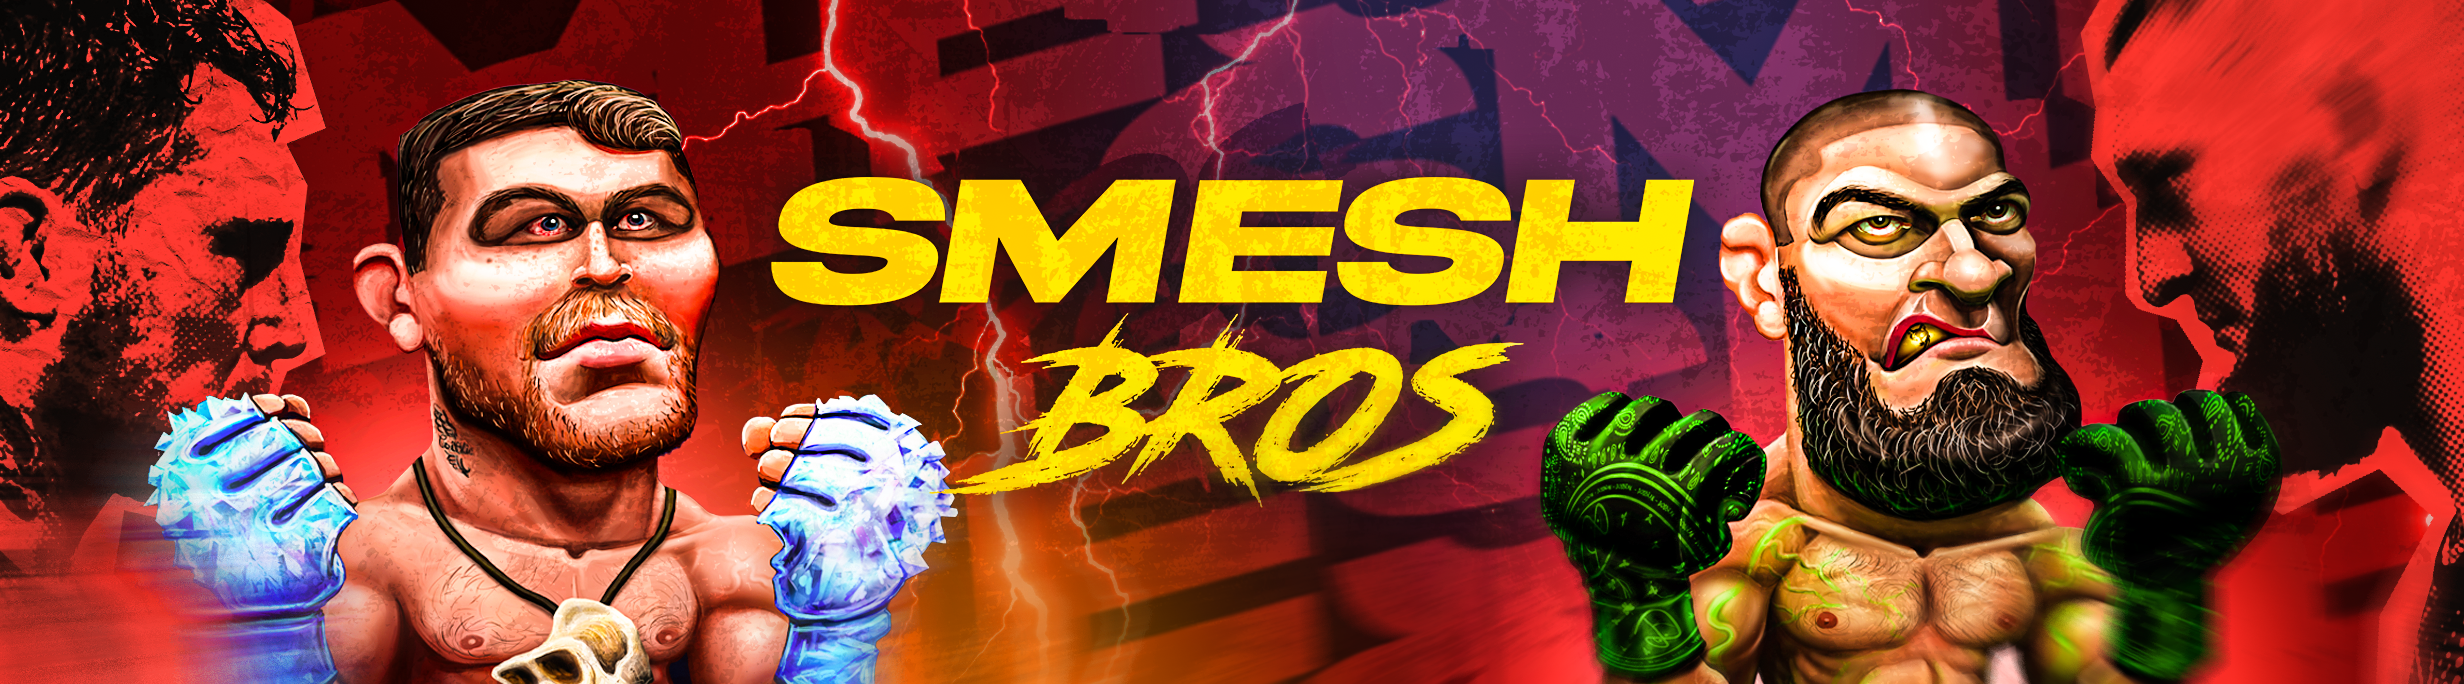 Smesh Bros cover